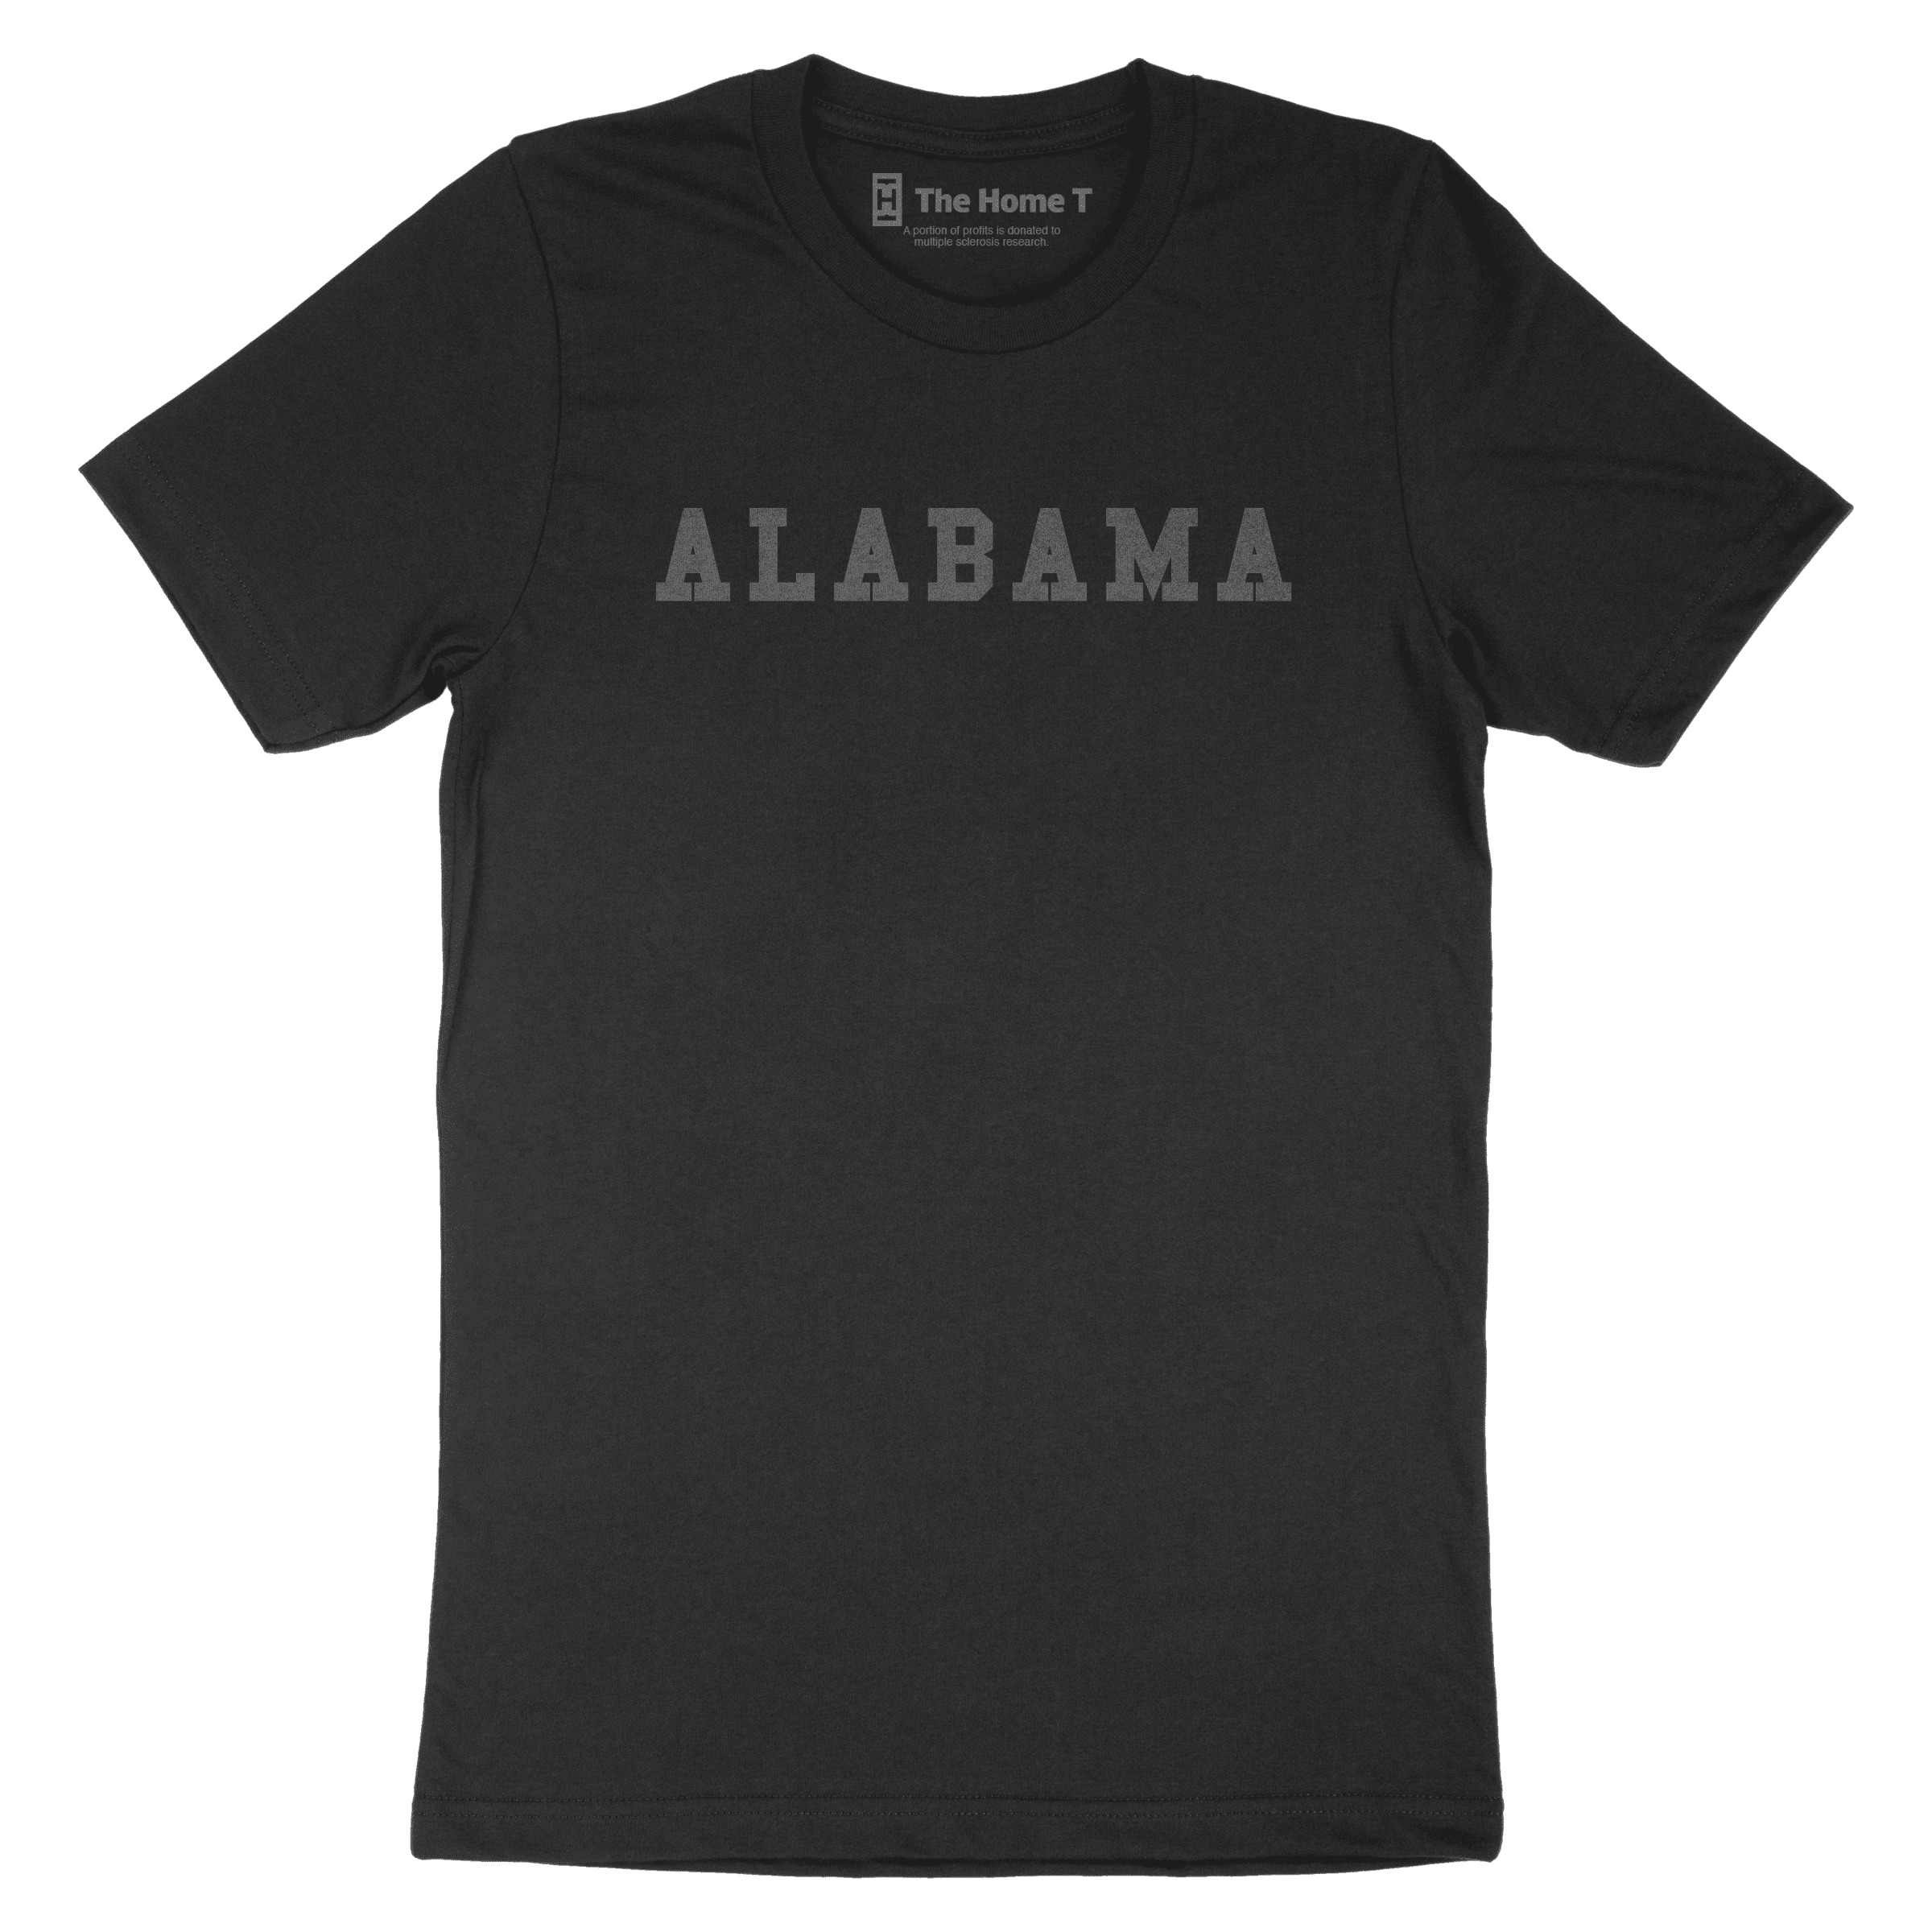 Alabama Black on Black